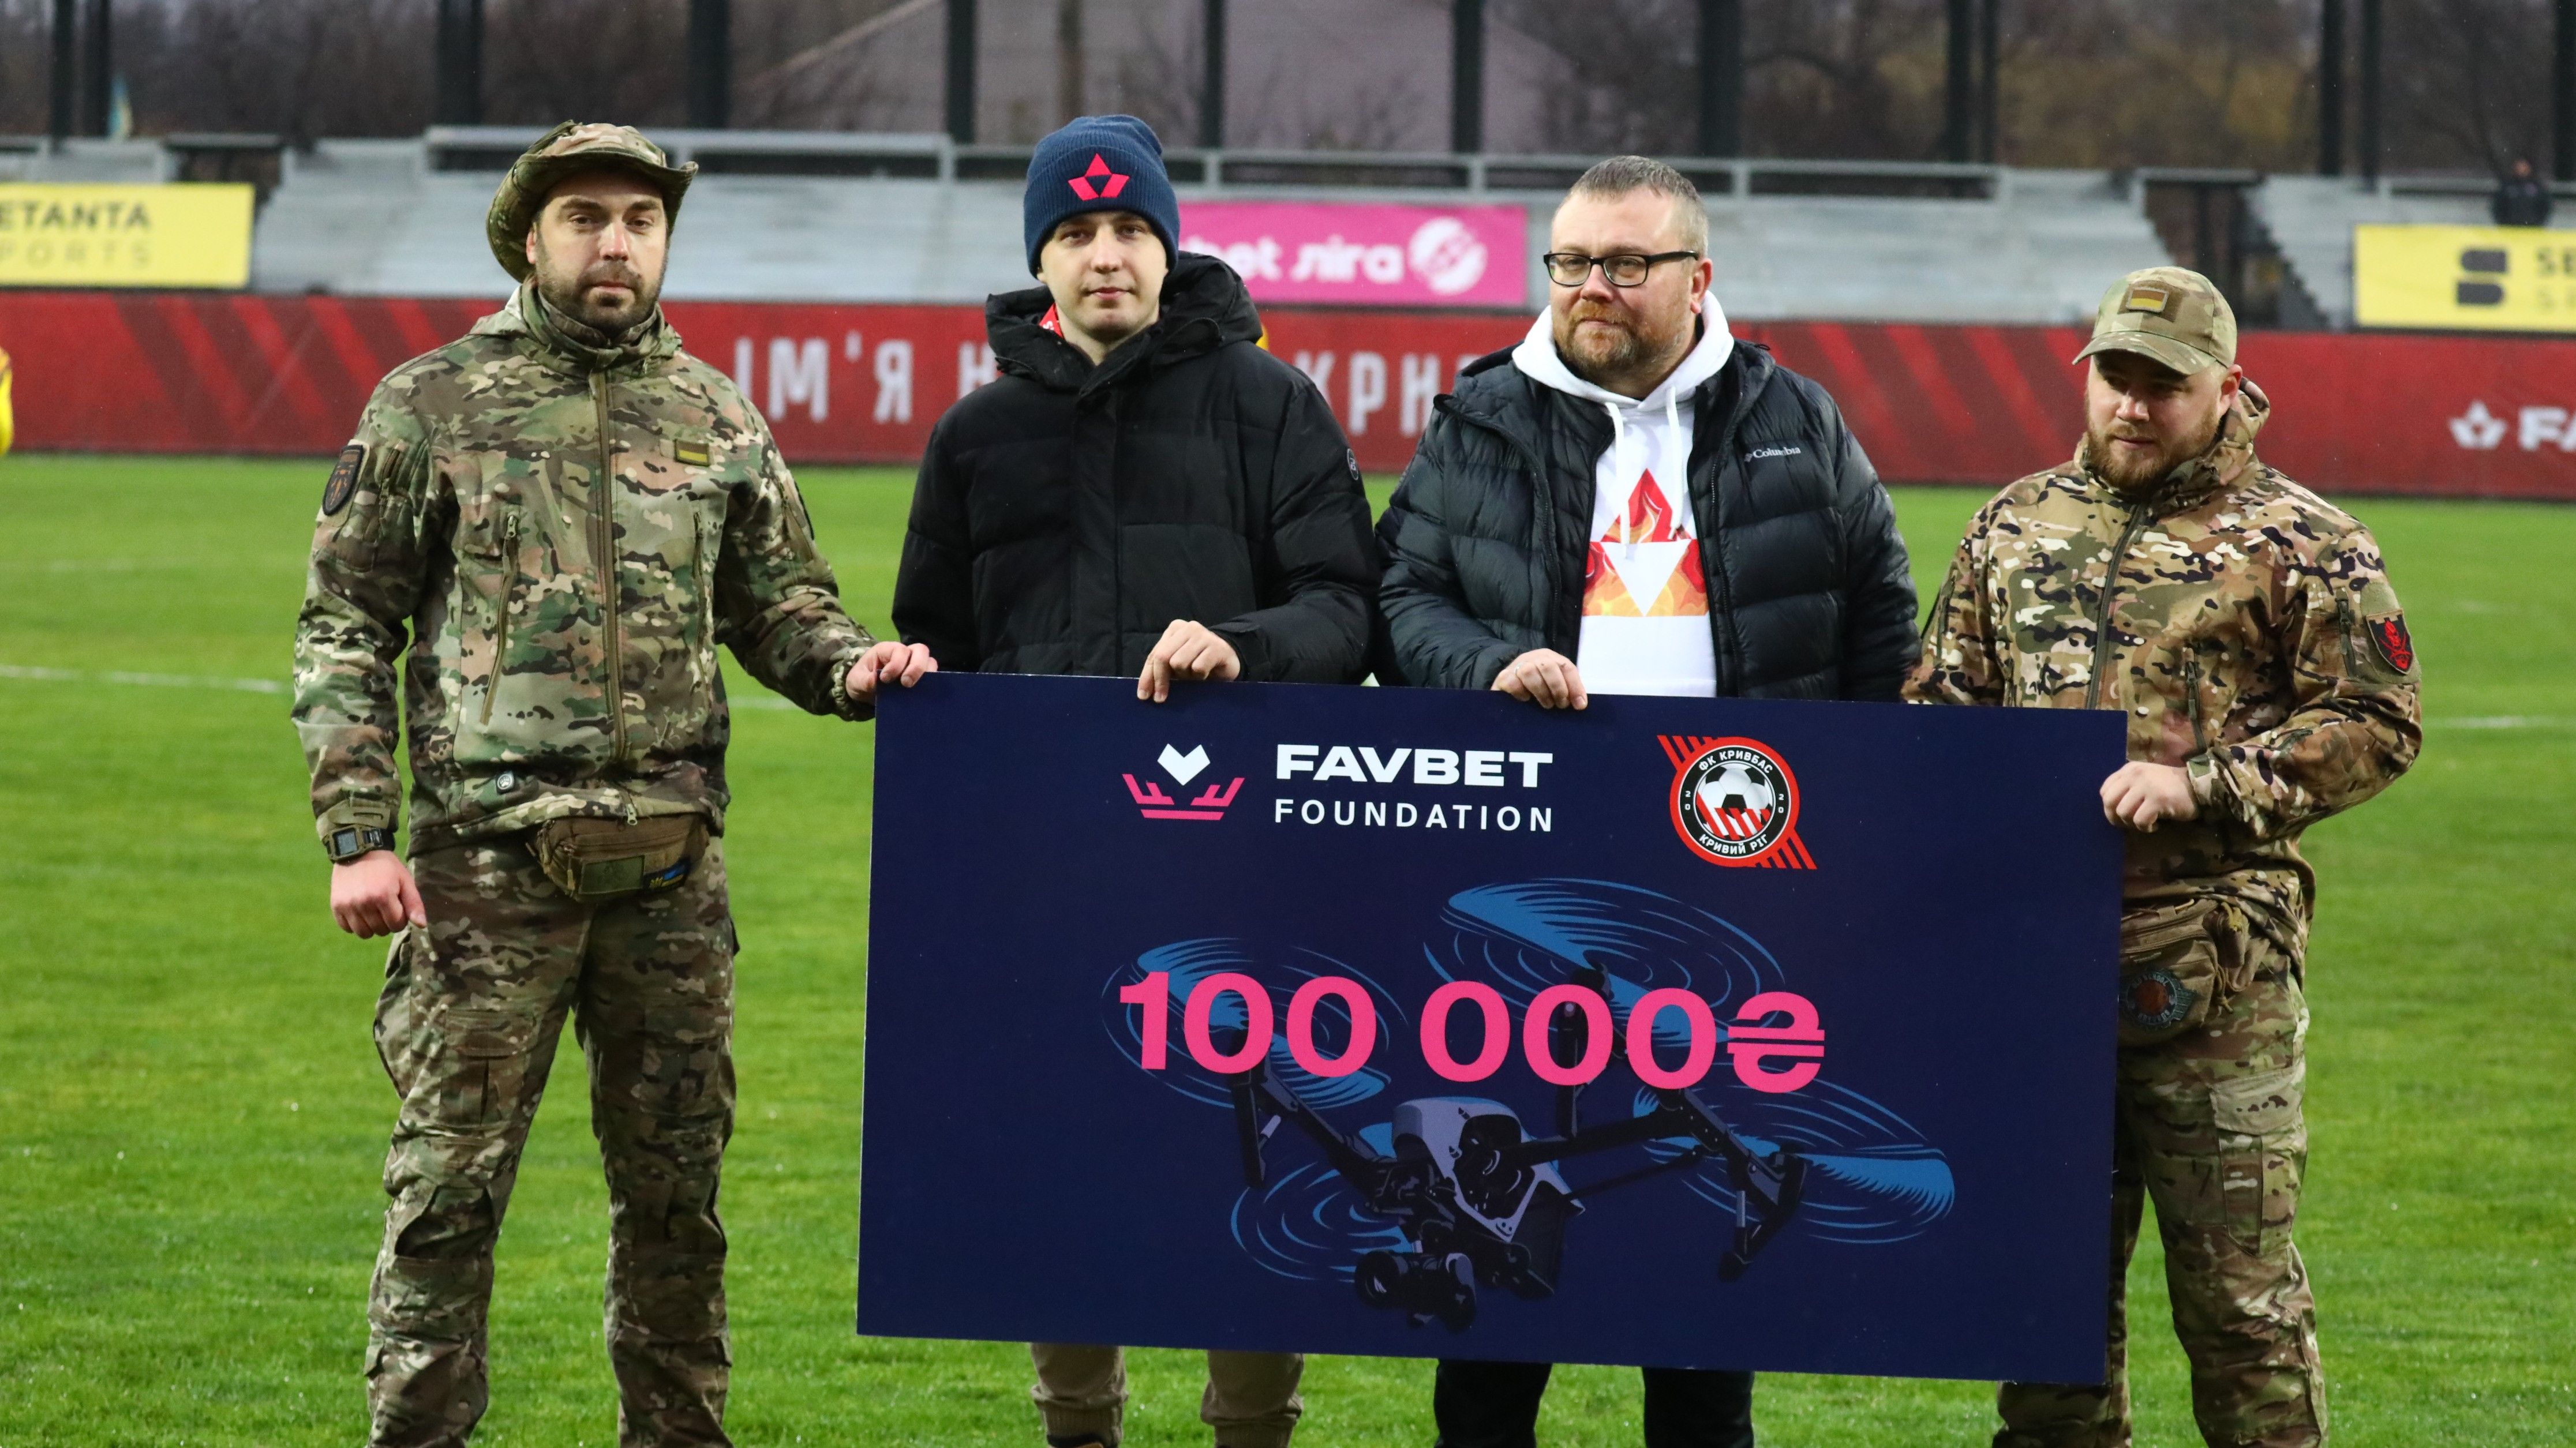 Favbet Foundation передал 100 000 гривен подразделению, где служит сотрудник ФК "Кривбасс"